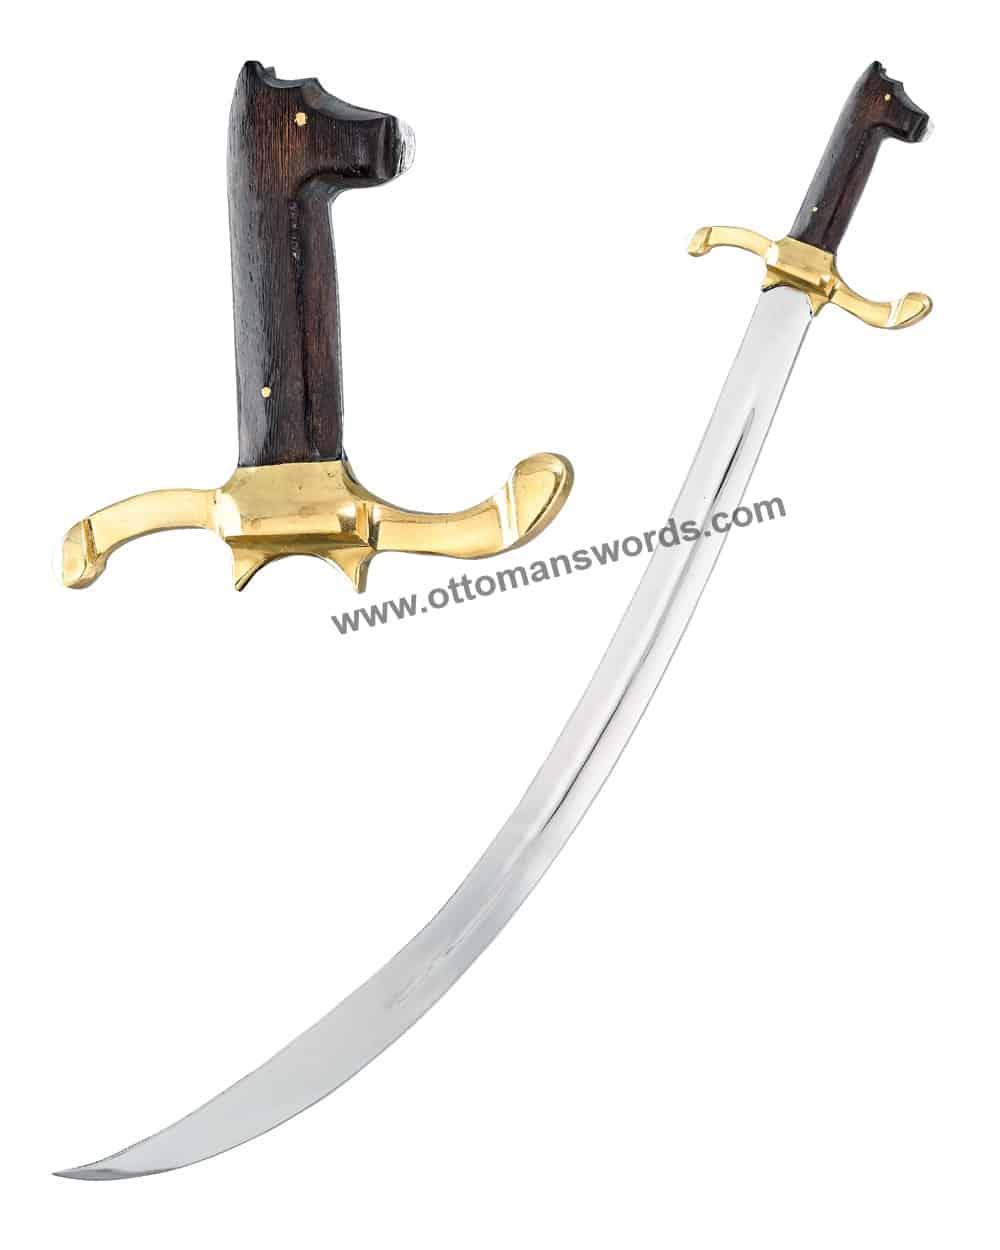 Customizable gift Sword online